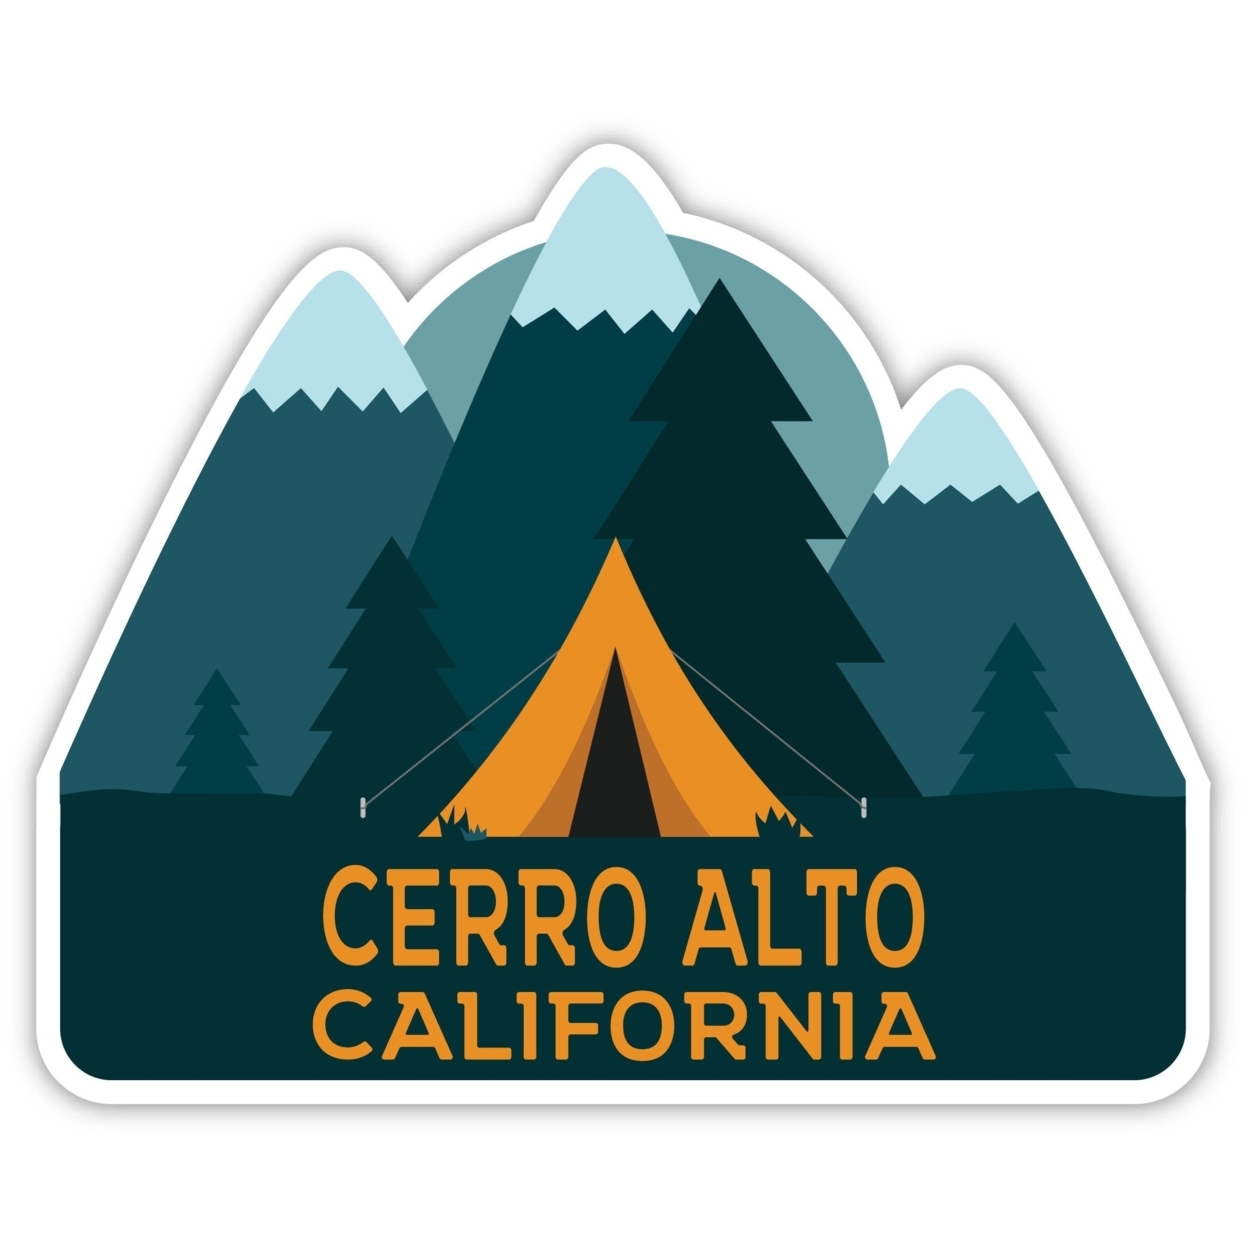 Cerro Alto California Souvenir Decorative Stickers (Choose Theme And Size) - 4-Pack, 6-Inch, Tent